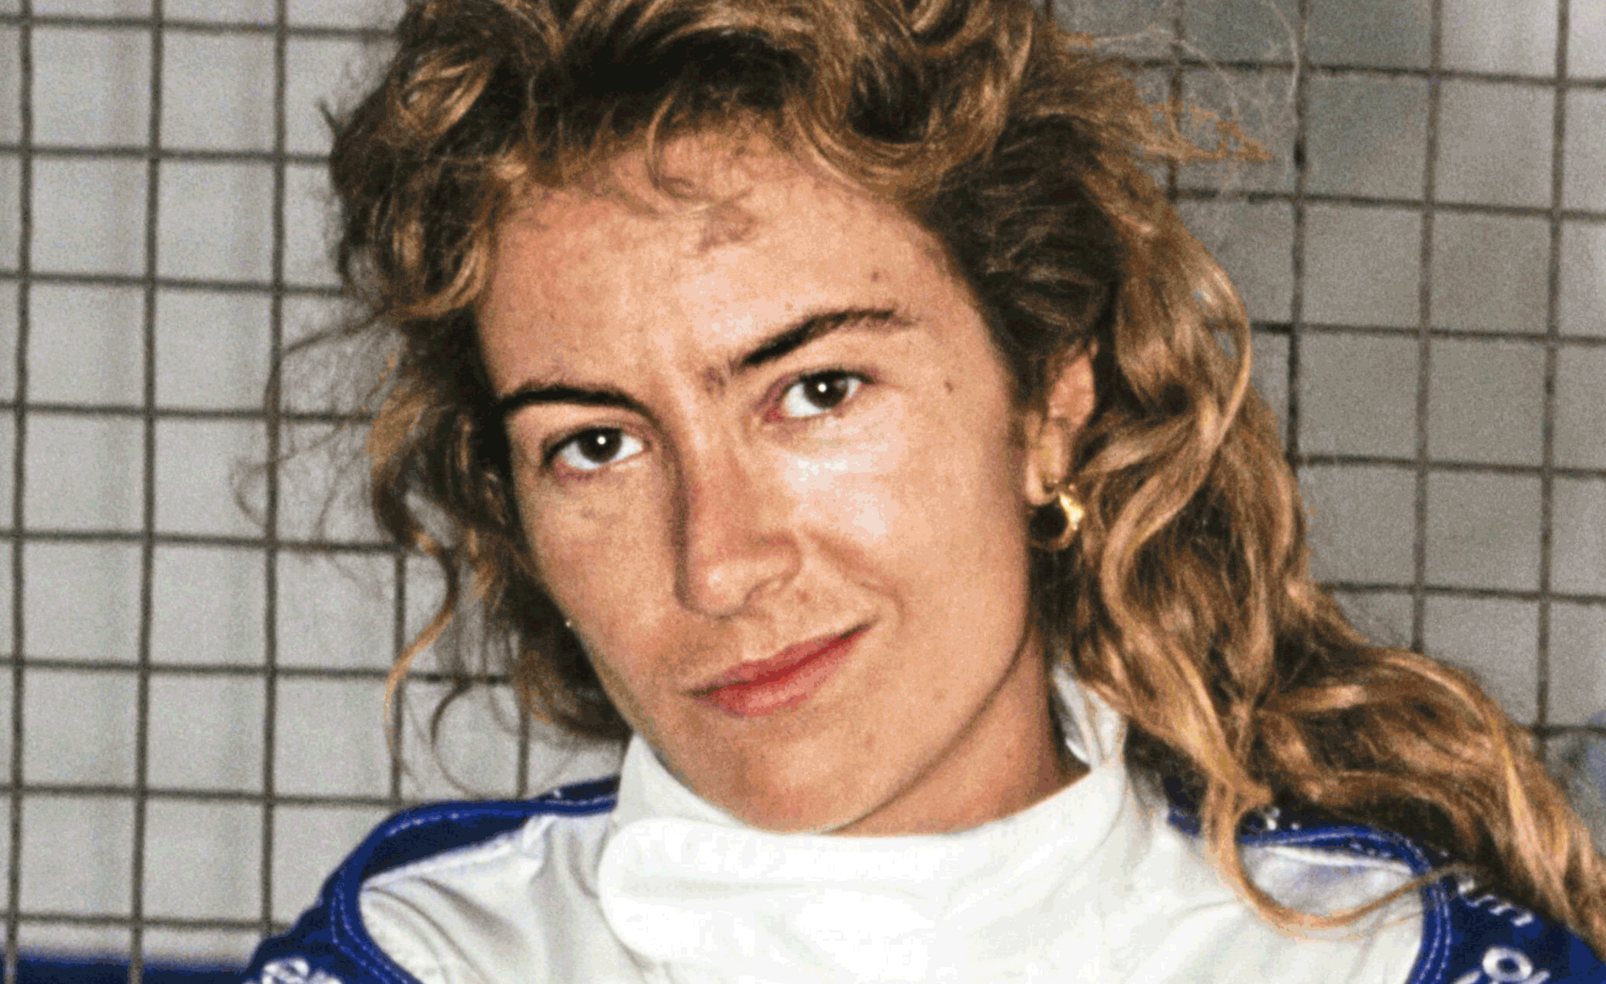 Portrait der Rennfahrerin Giovanna Amati, die in Fahrbekleidung vor einem Gitter in die Kamera blickt und lächelt.